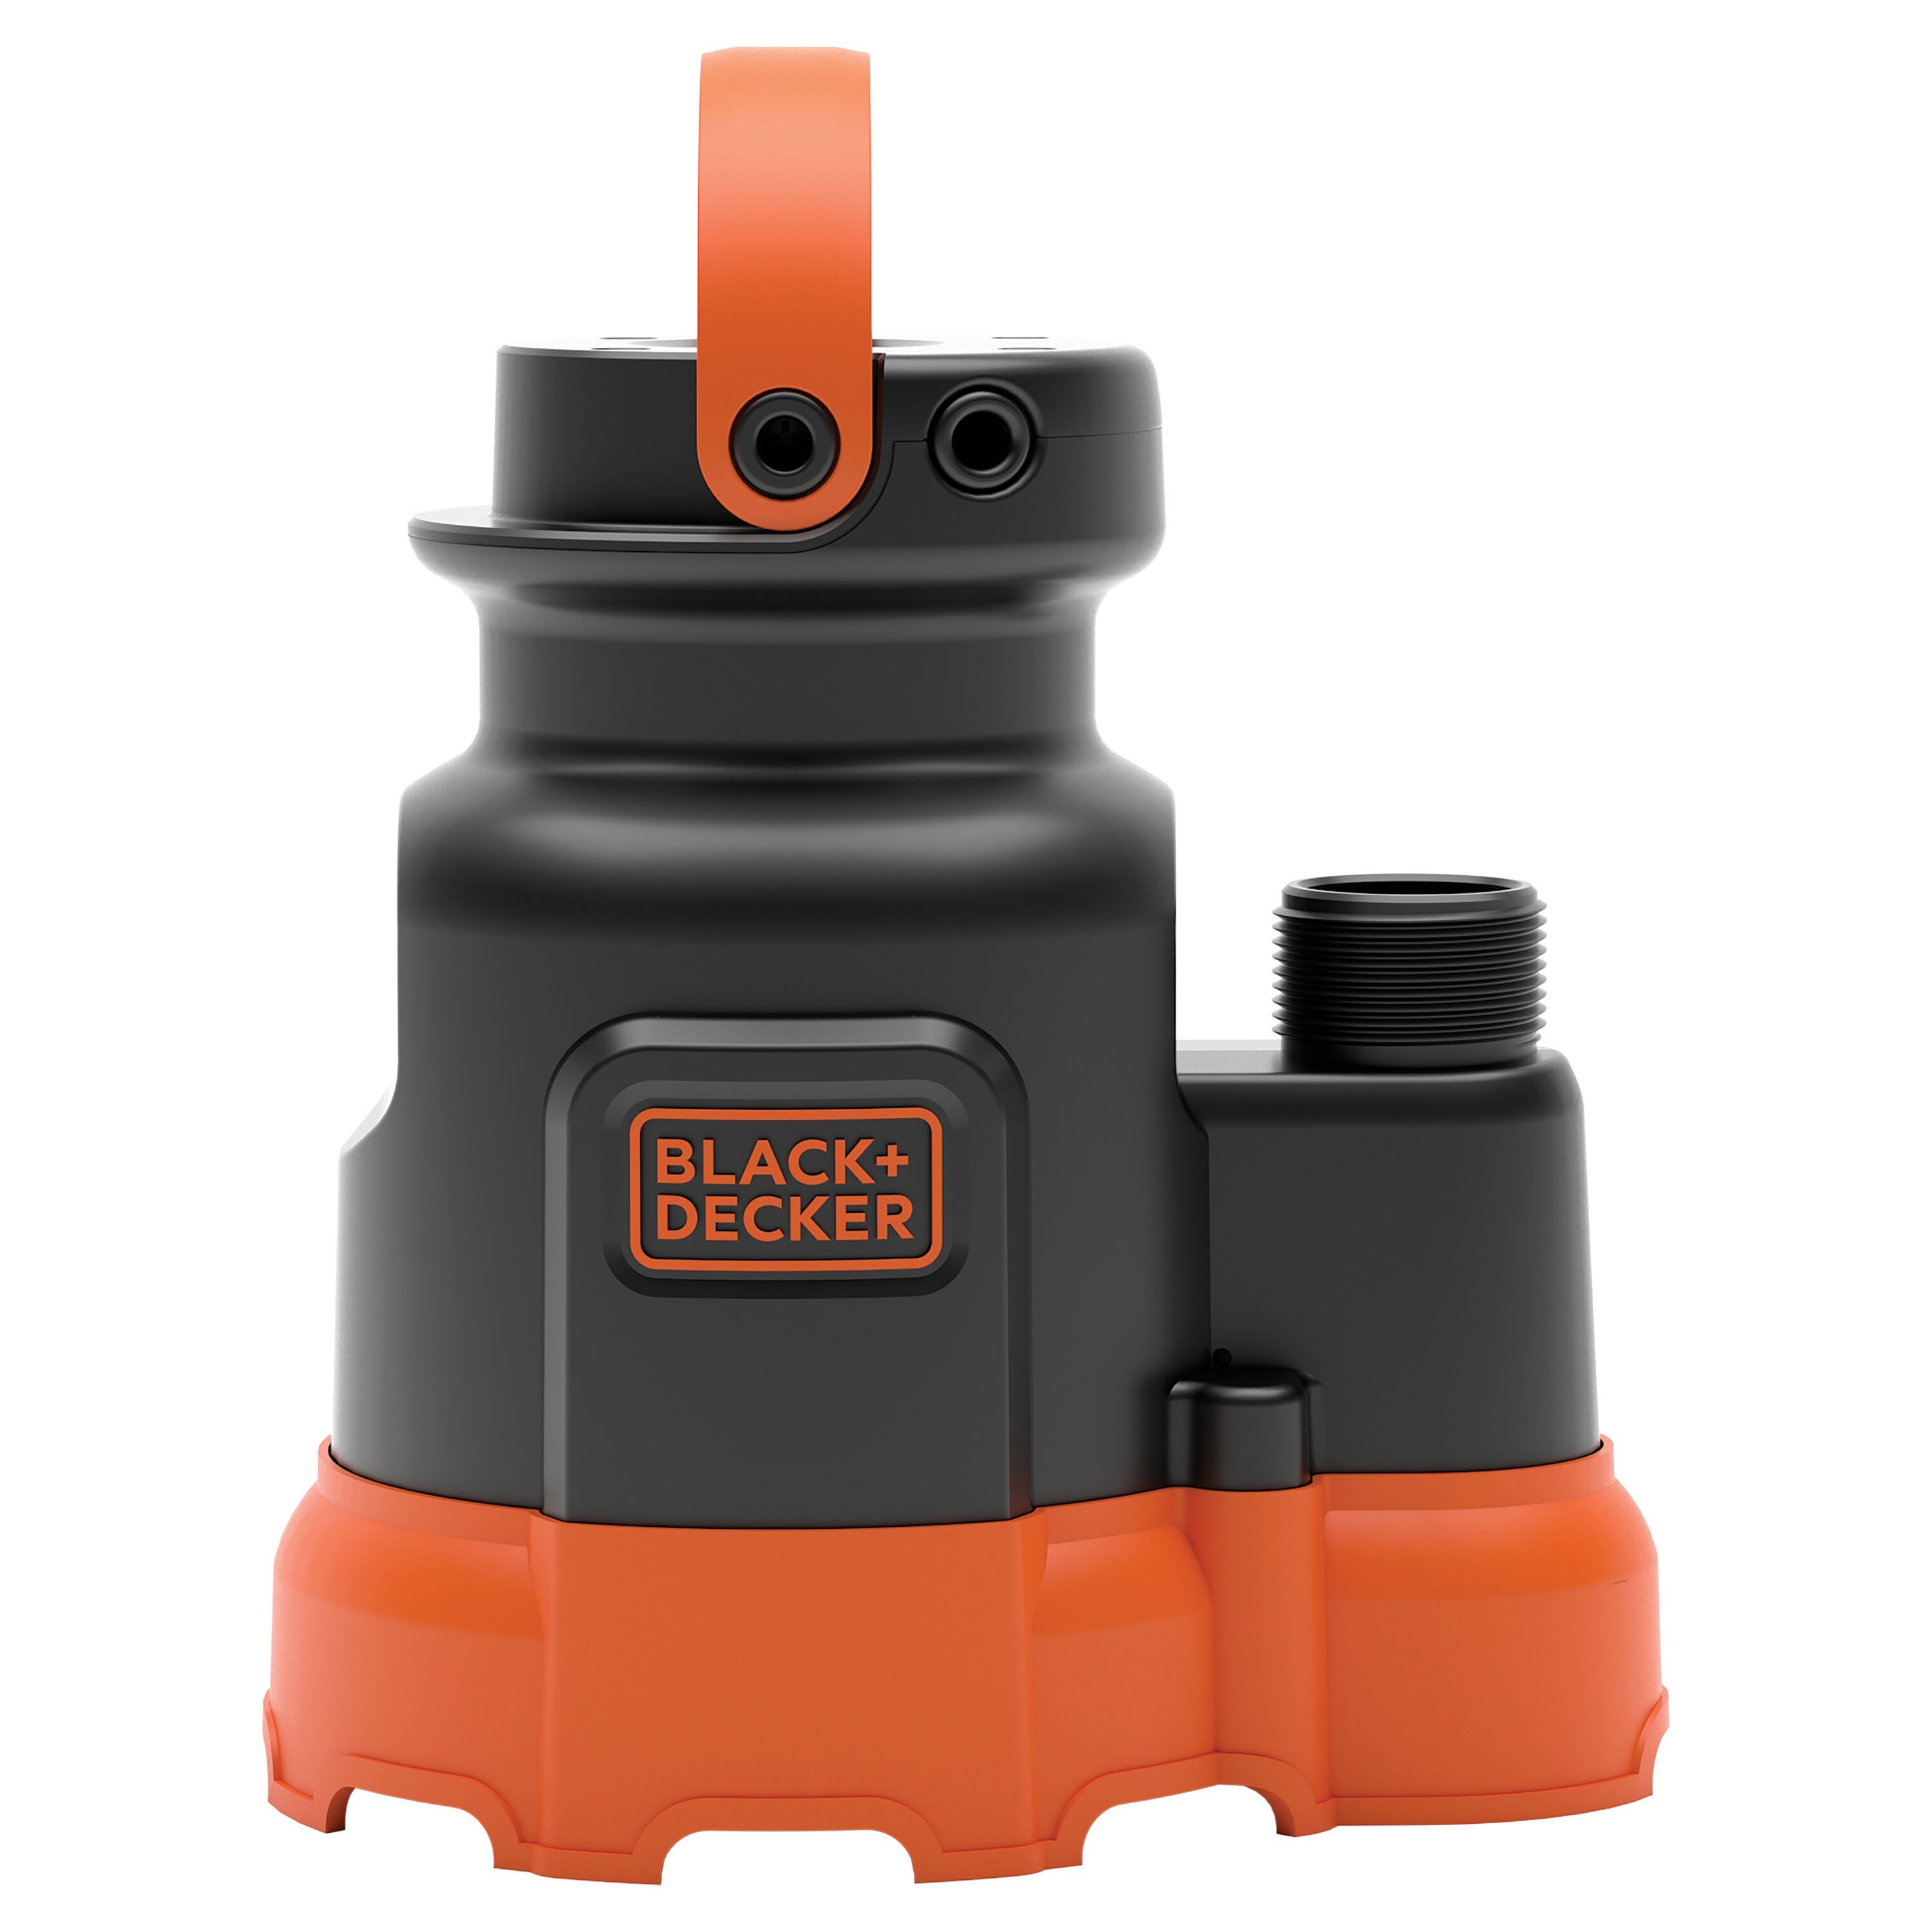 Black+decker Bxwp60002 Drill Pump, Size: 4 in